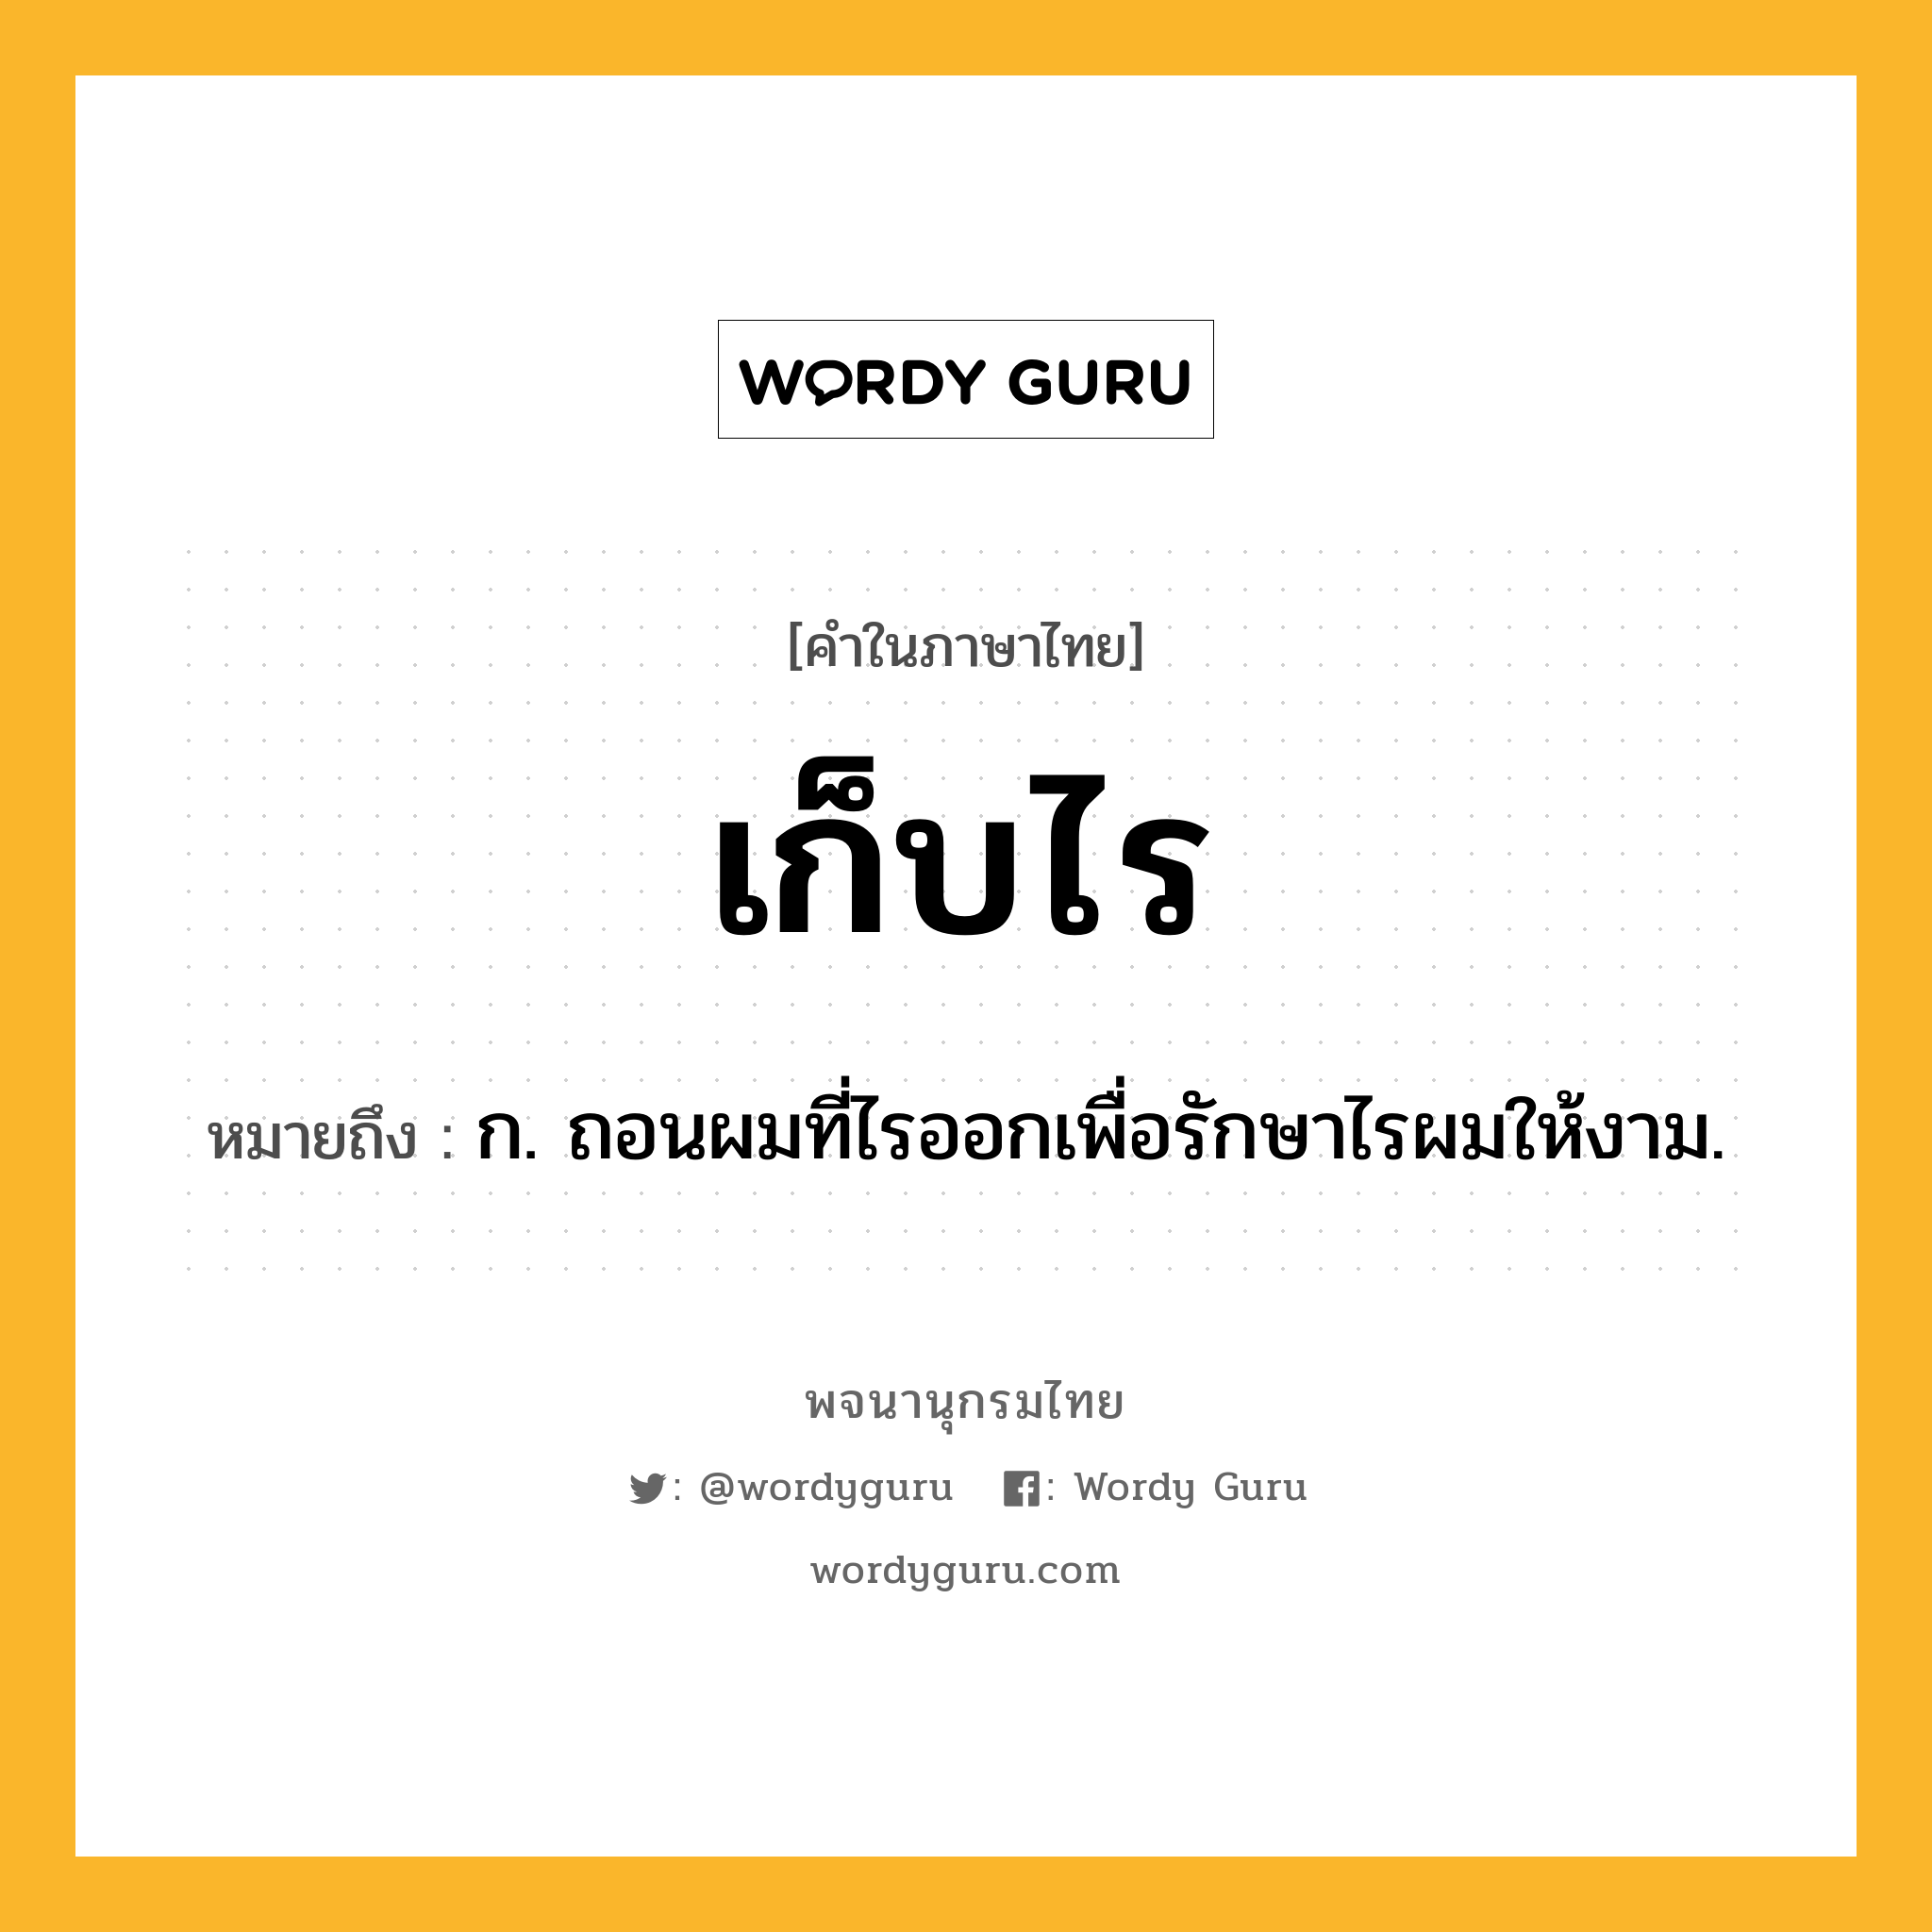 เก็บไร หมายถึงอะไร?, คำในภาษาไทย เก็บไร หมายถึง ก. ถอนผมที่ไรออกเพื่อรักษาไรผมให้งาม.